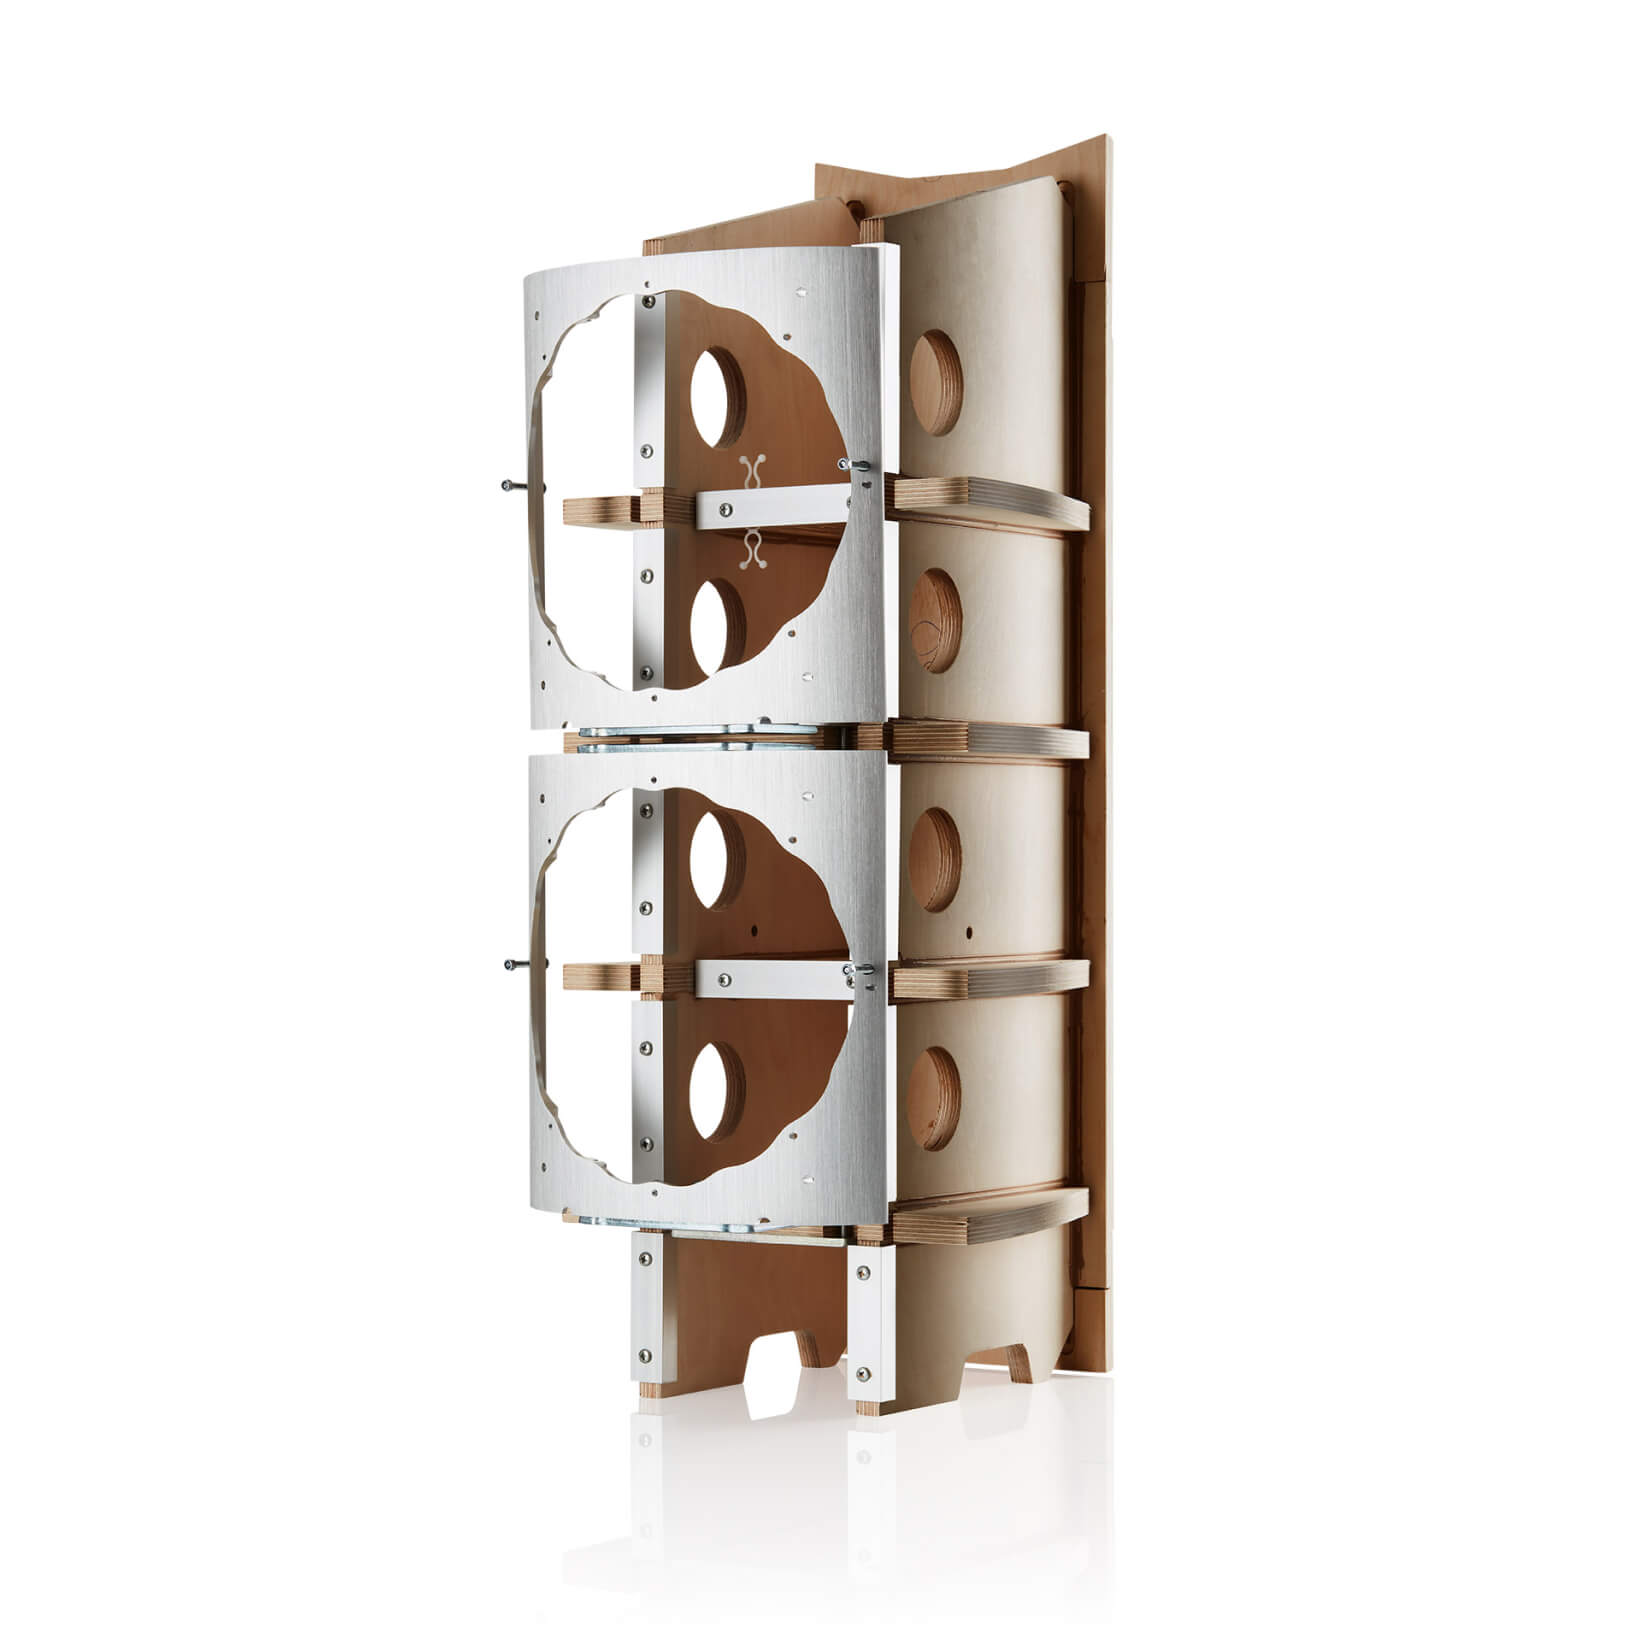 Bowers & Wilkins 803 D4 Floorstanding Speakers Made In England - Satin Walnut & White Bw_speaker_803_d4_enhancedmatrix